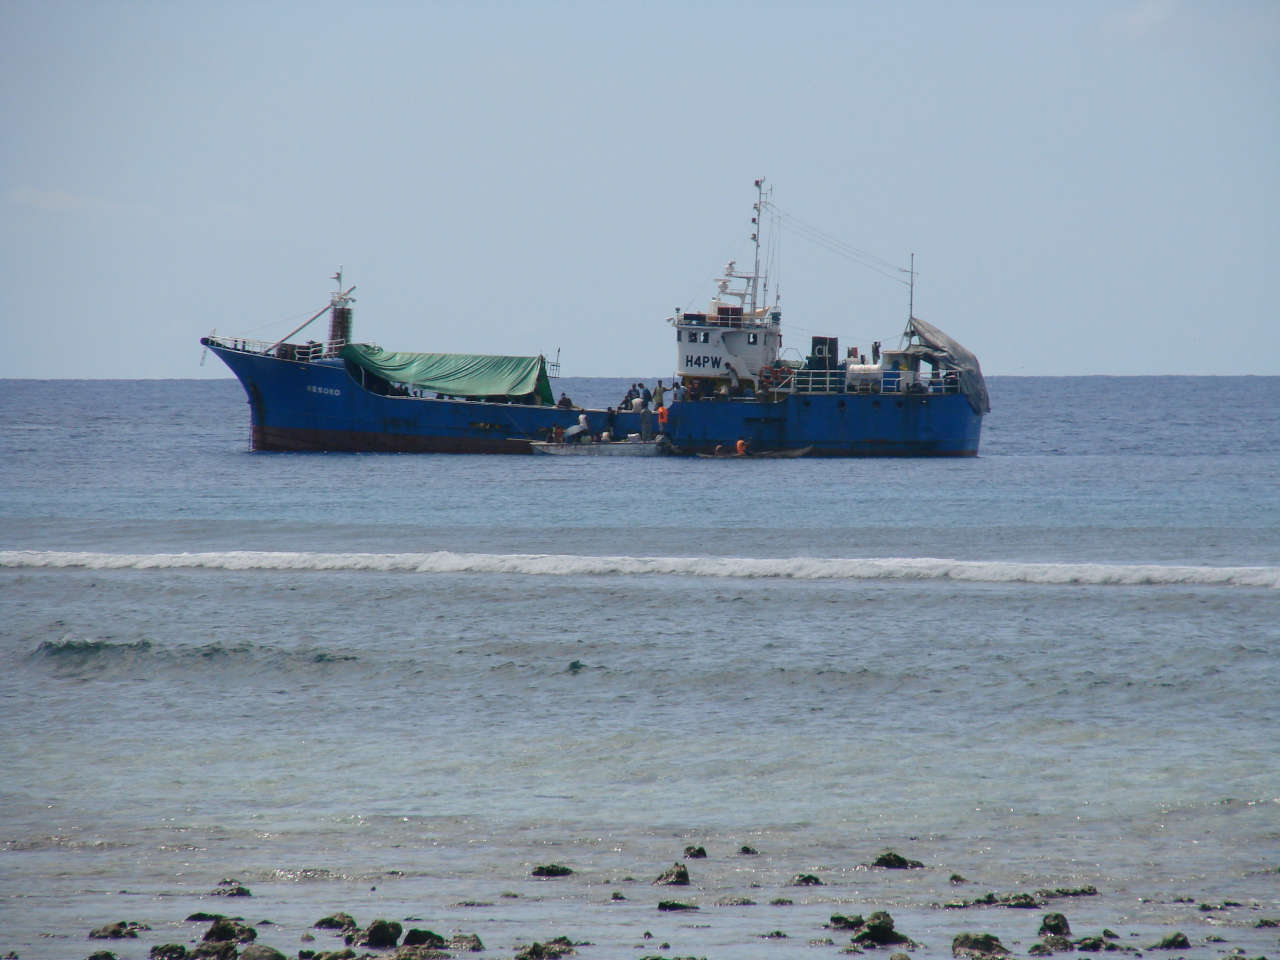 A blue cargo ship offshore